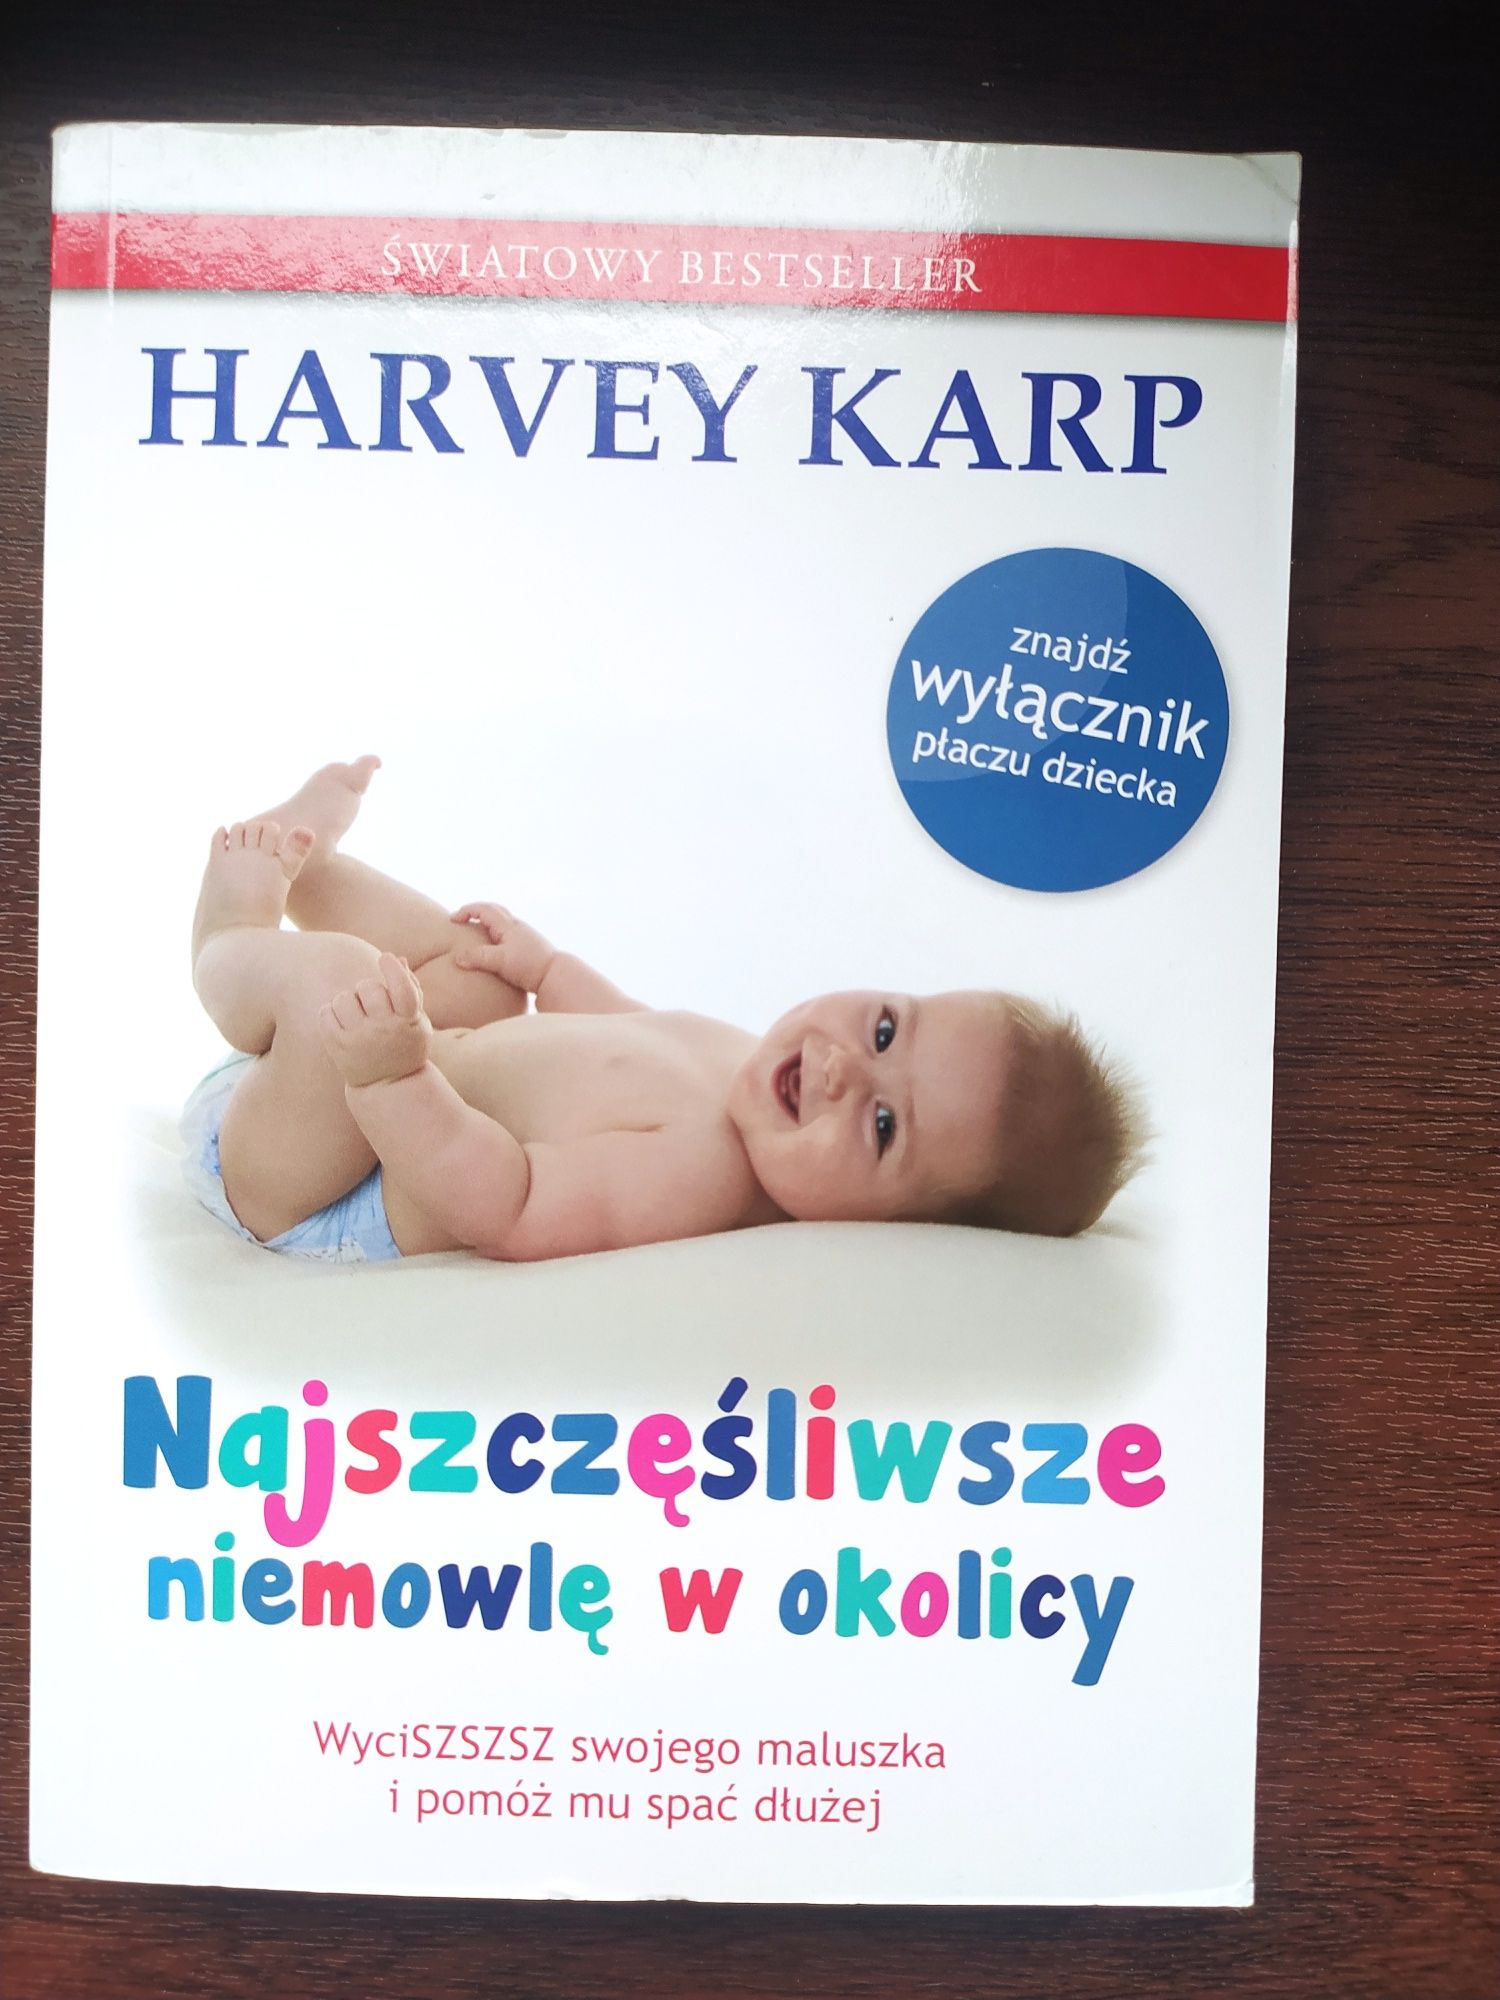 Harvey Karp "Najszczęśliwsze dziecko w okolicy", Mamania